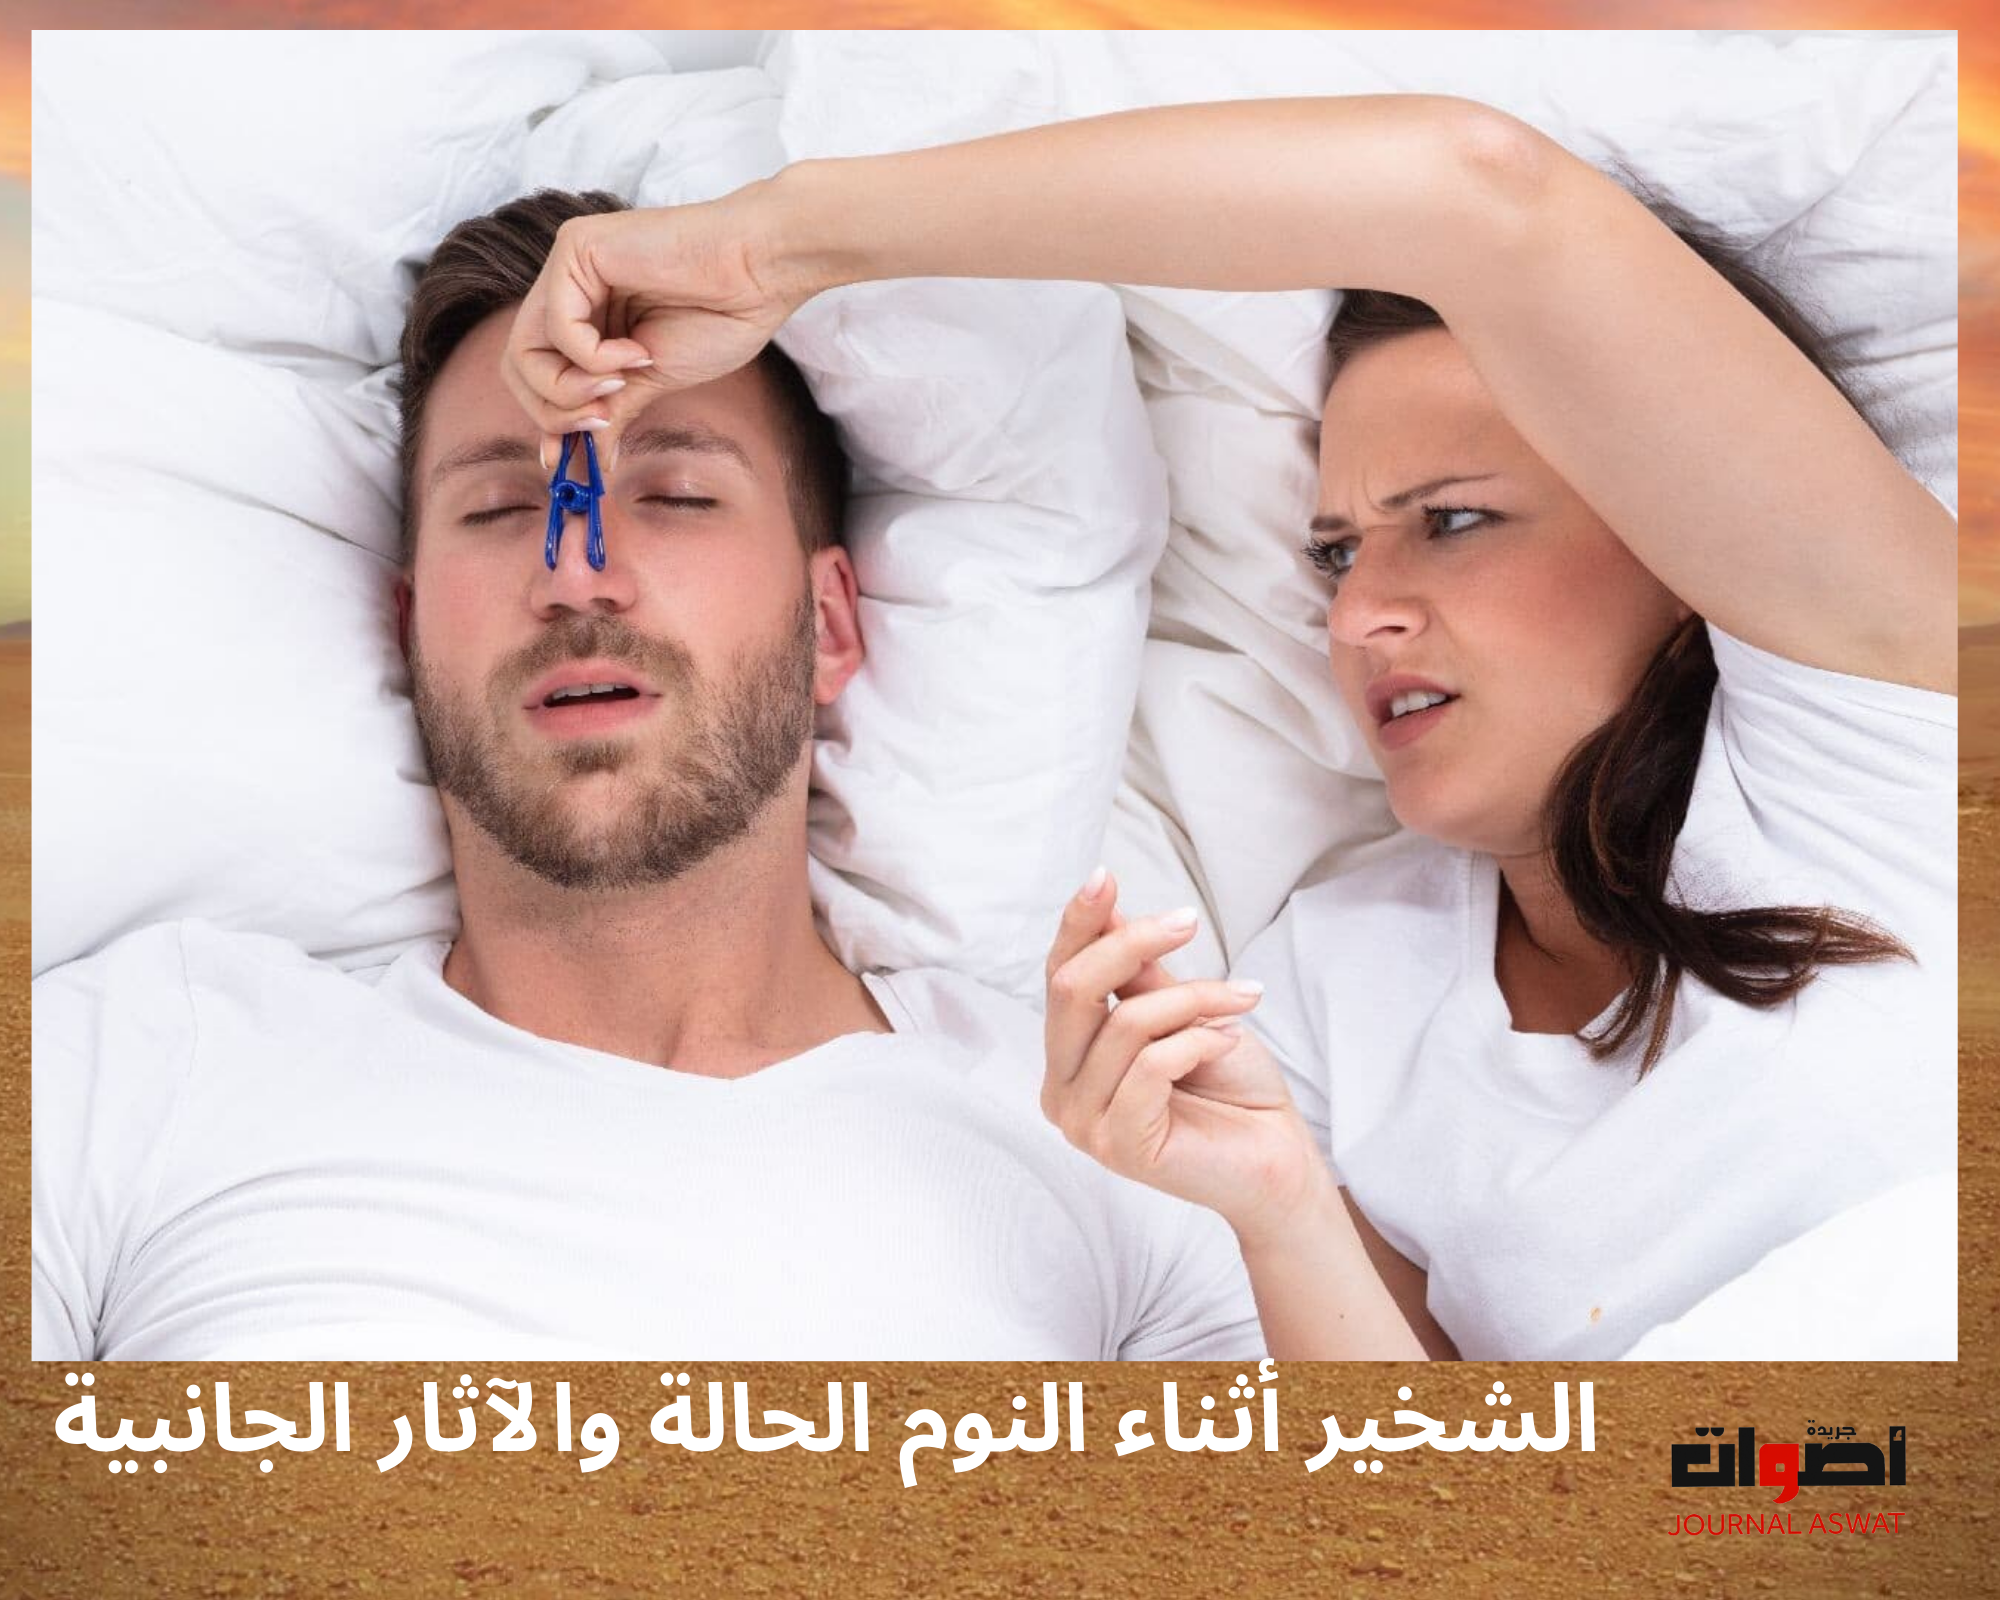 الشخير أثناء النوم الحالة والآثار الجانبية (1)